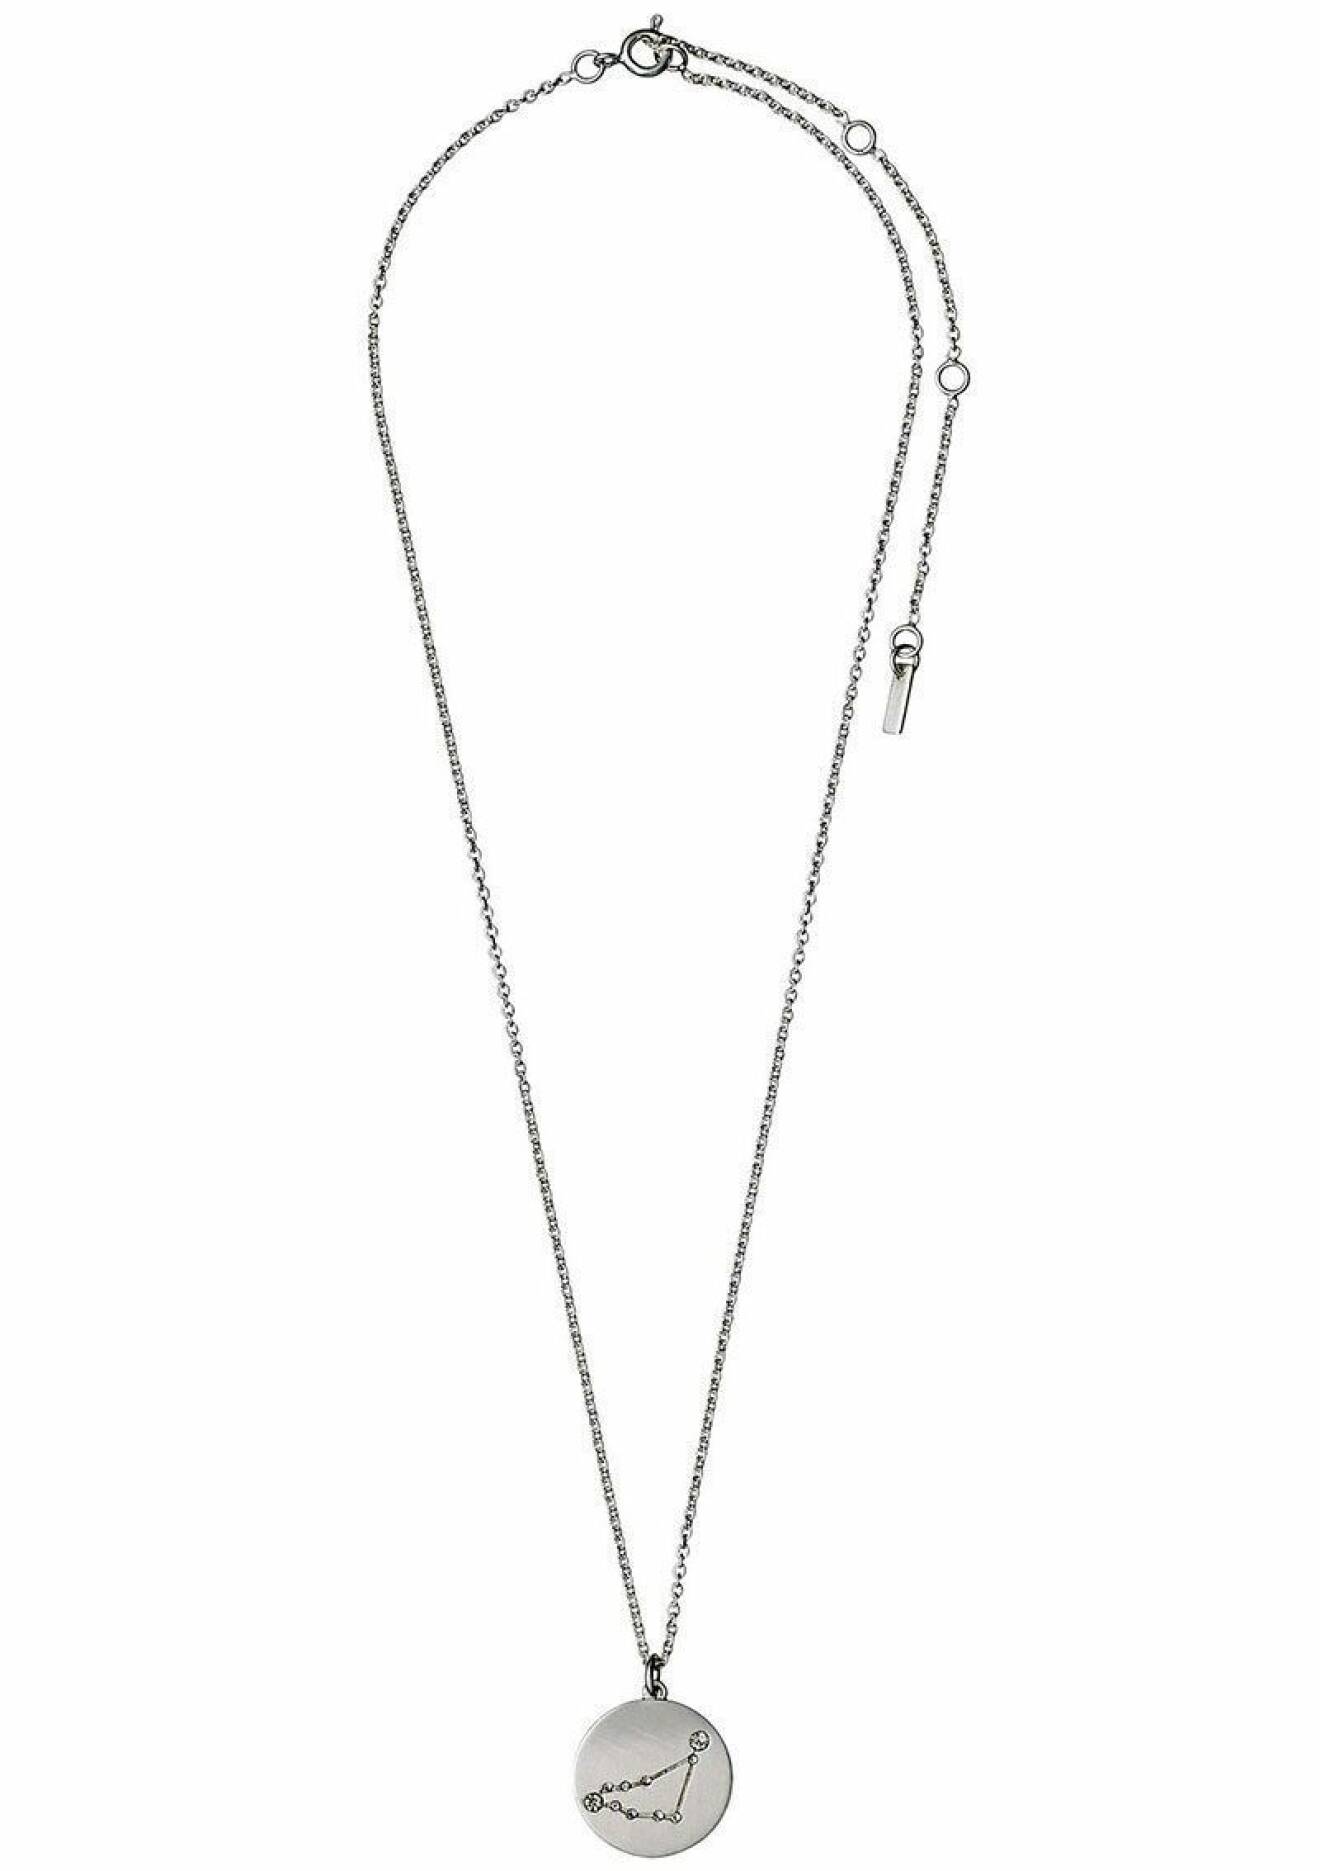 Halsband med stjärntecknet Stenbocken från Pilgrim